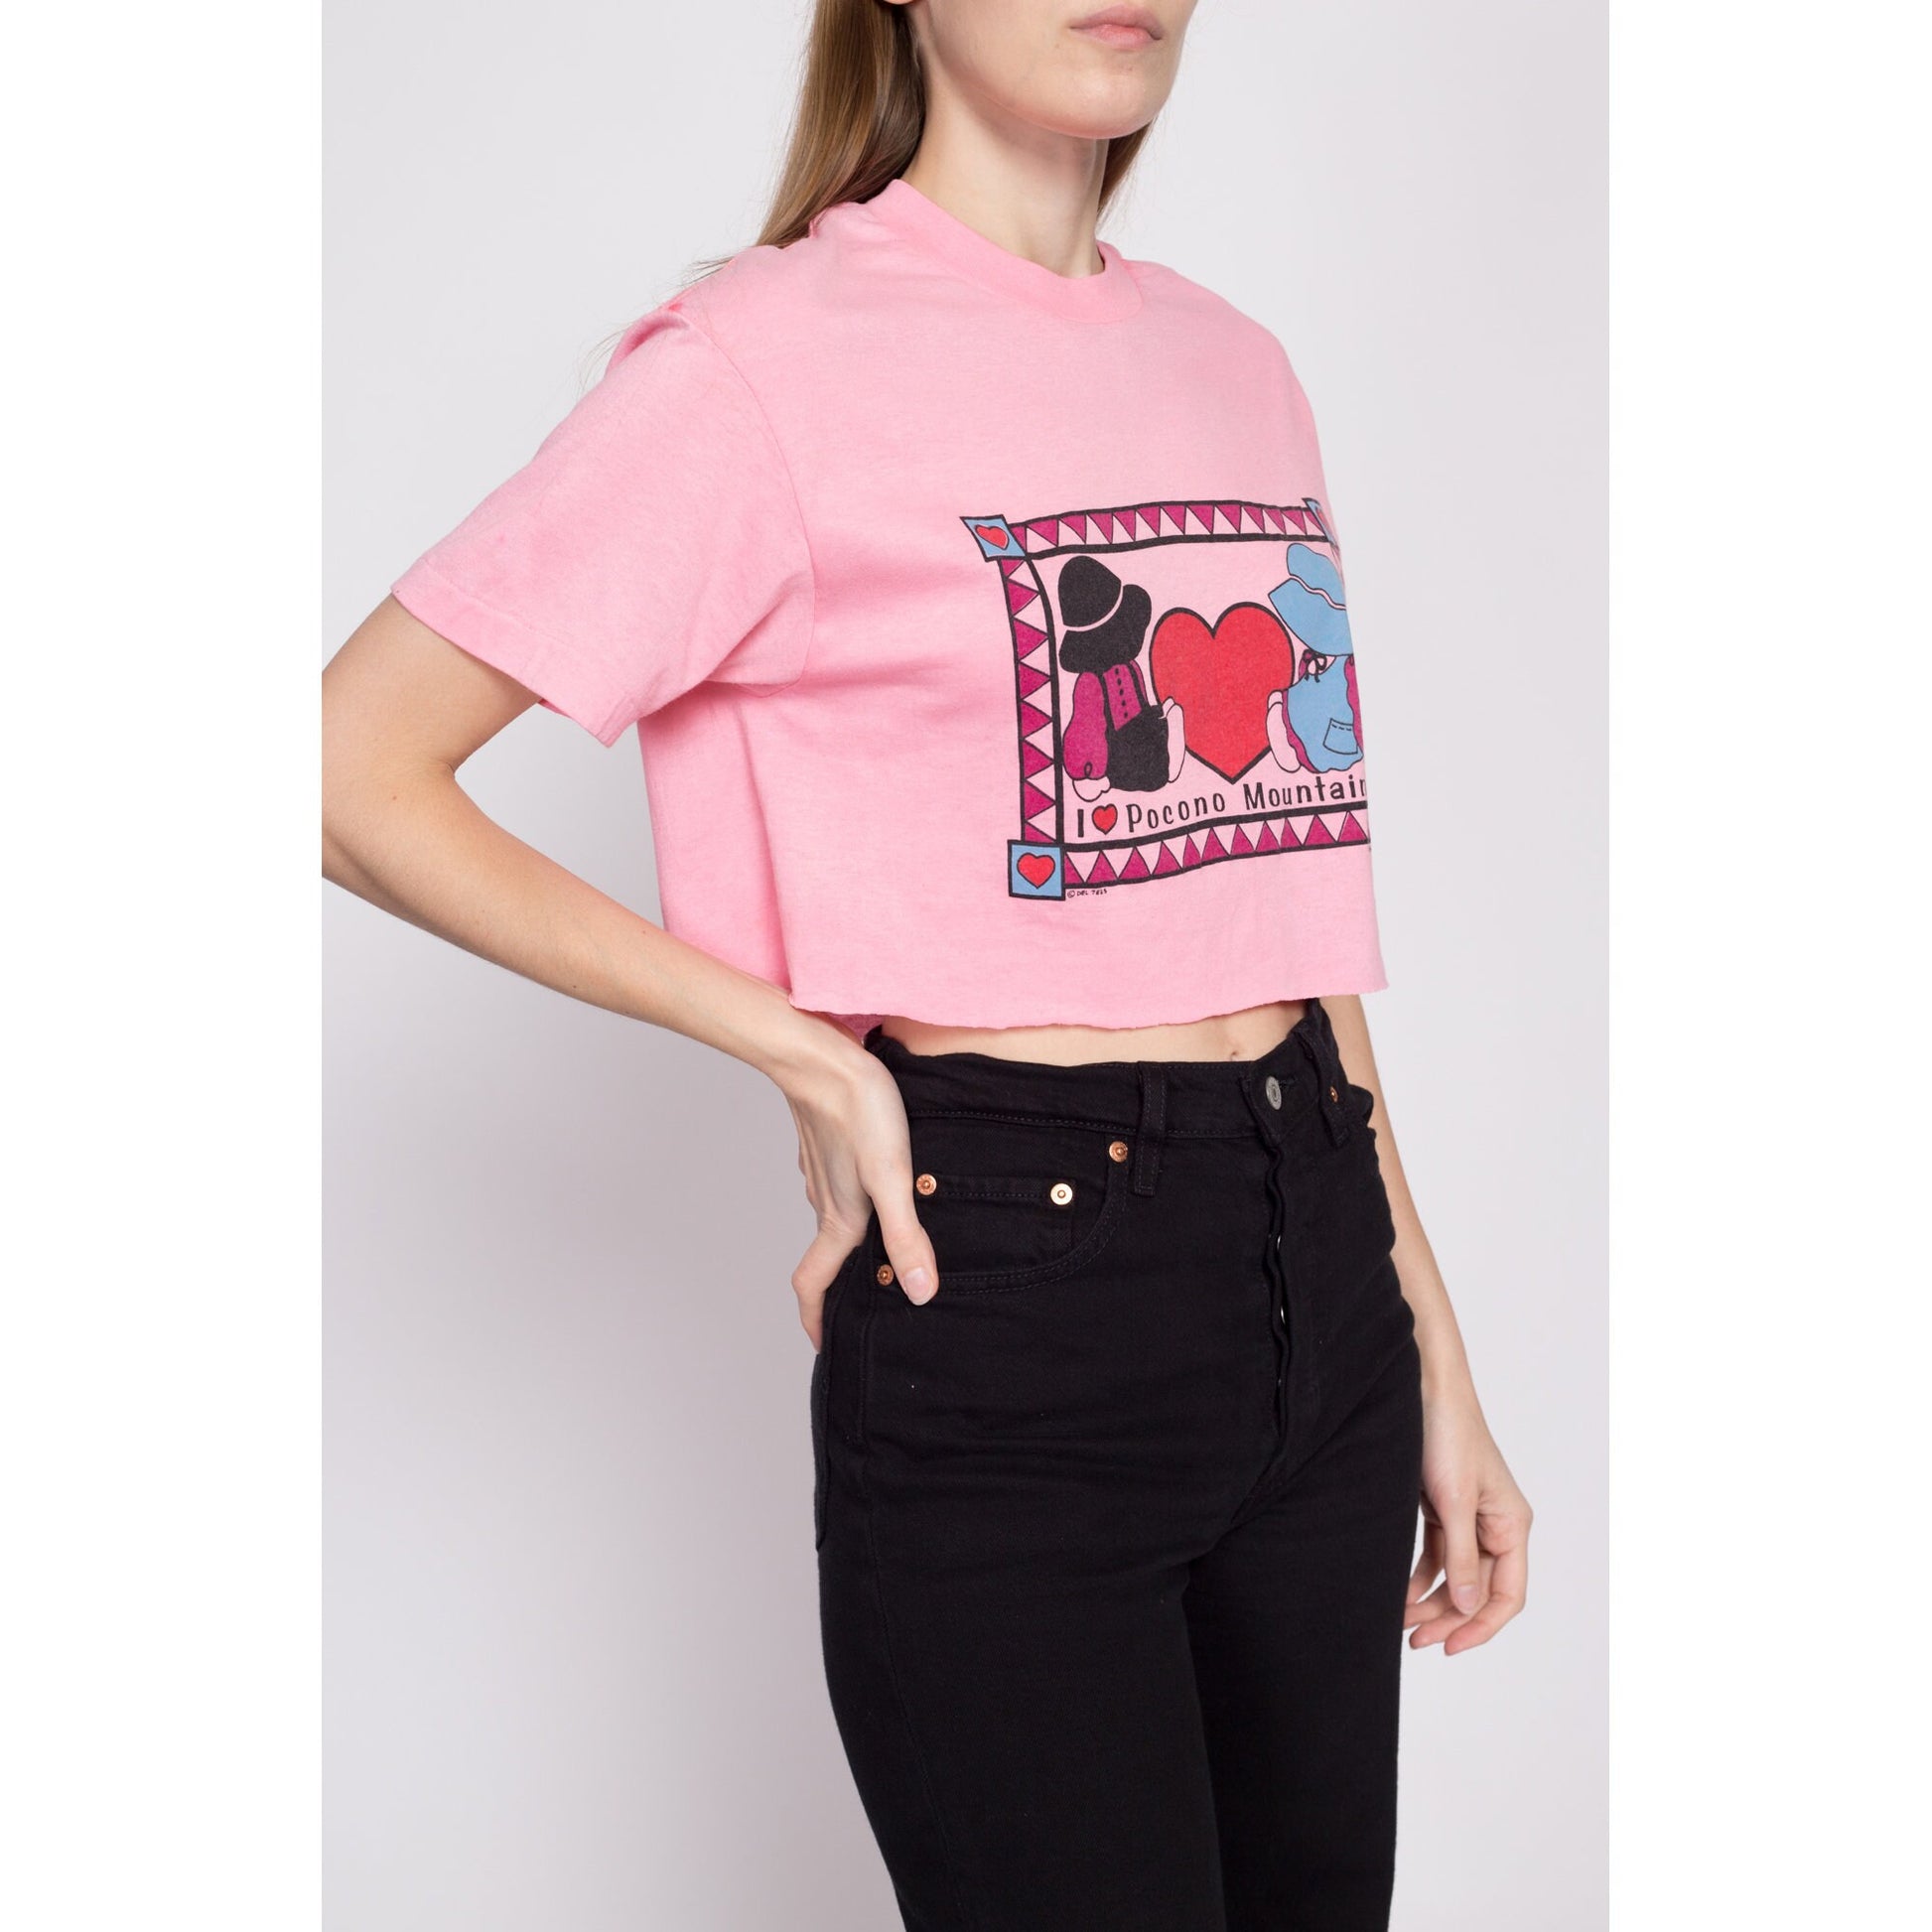 80s "I Heart Pocono Mountains" Crop Top Tee - Large | Vintage Cute Pink Tourist Souvenir T Shirt